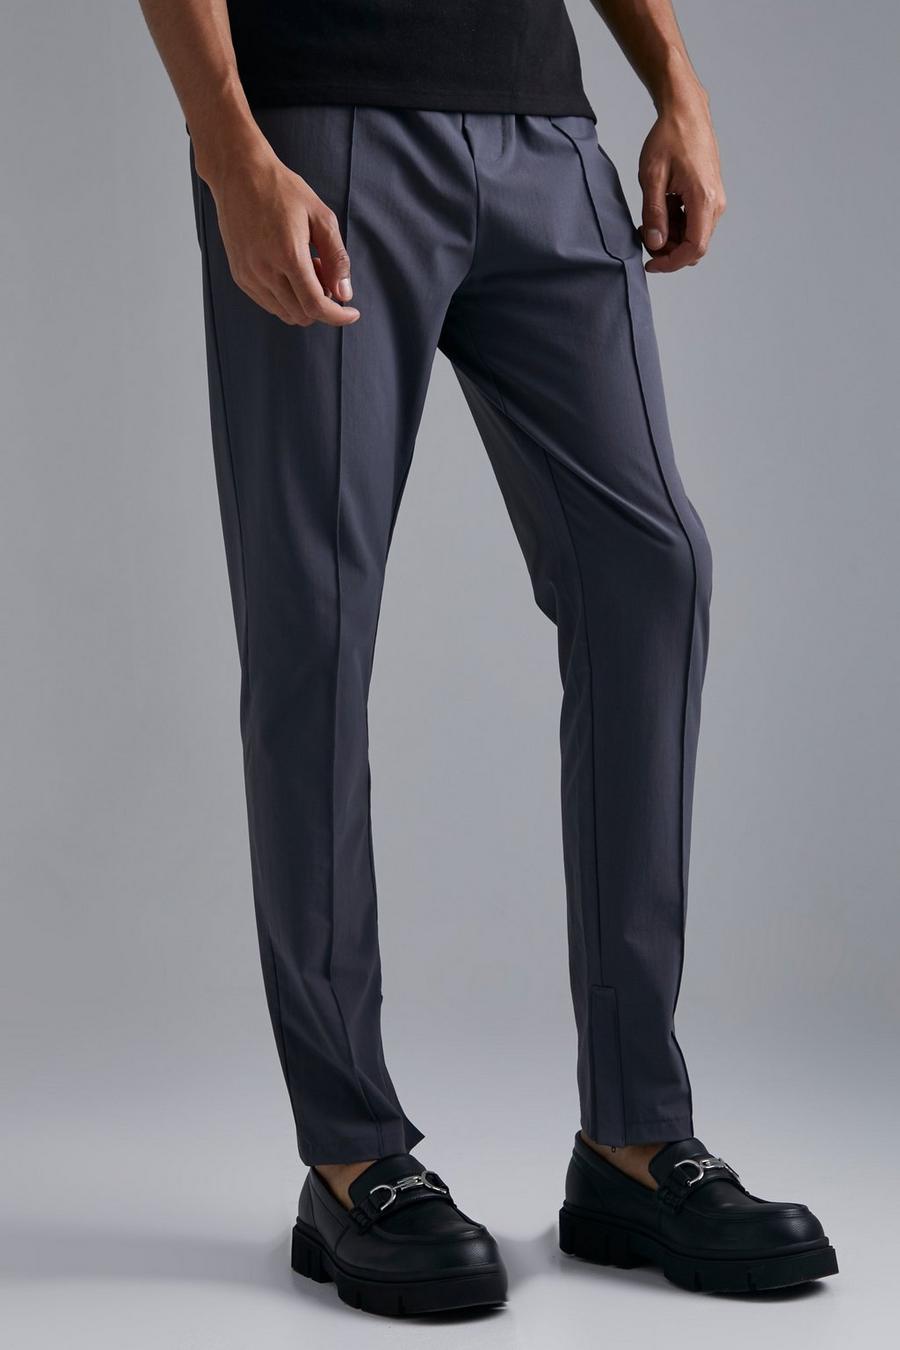 Dark grey Tall Slim Fit 4 Way Stretch Pintuck Pants